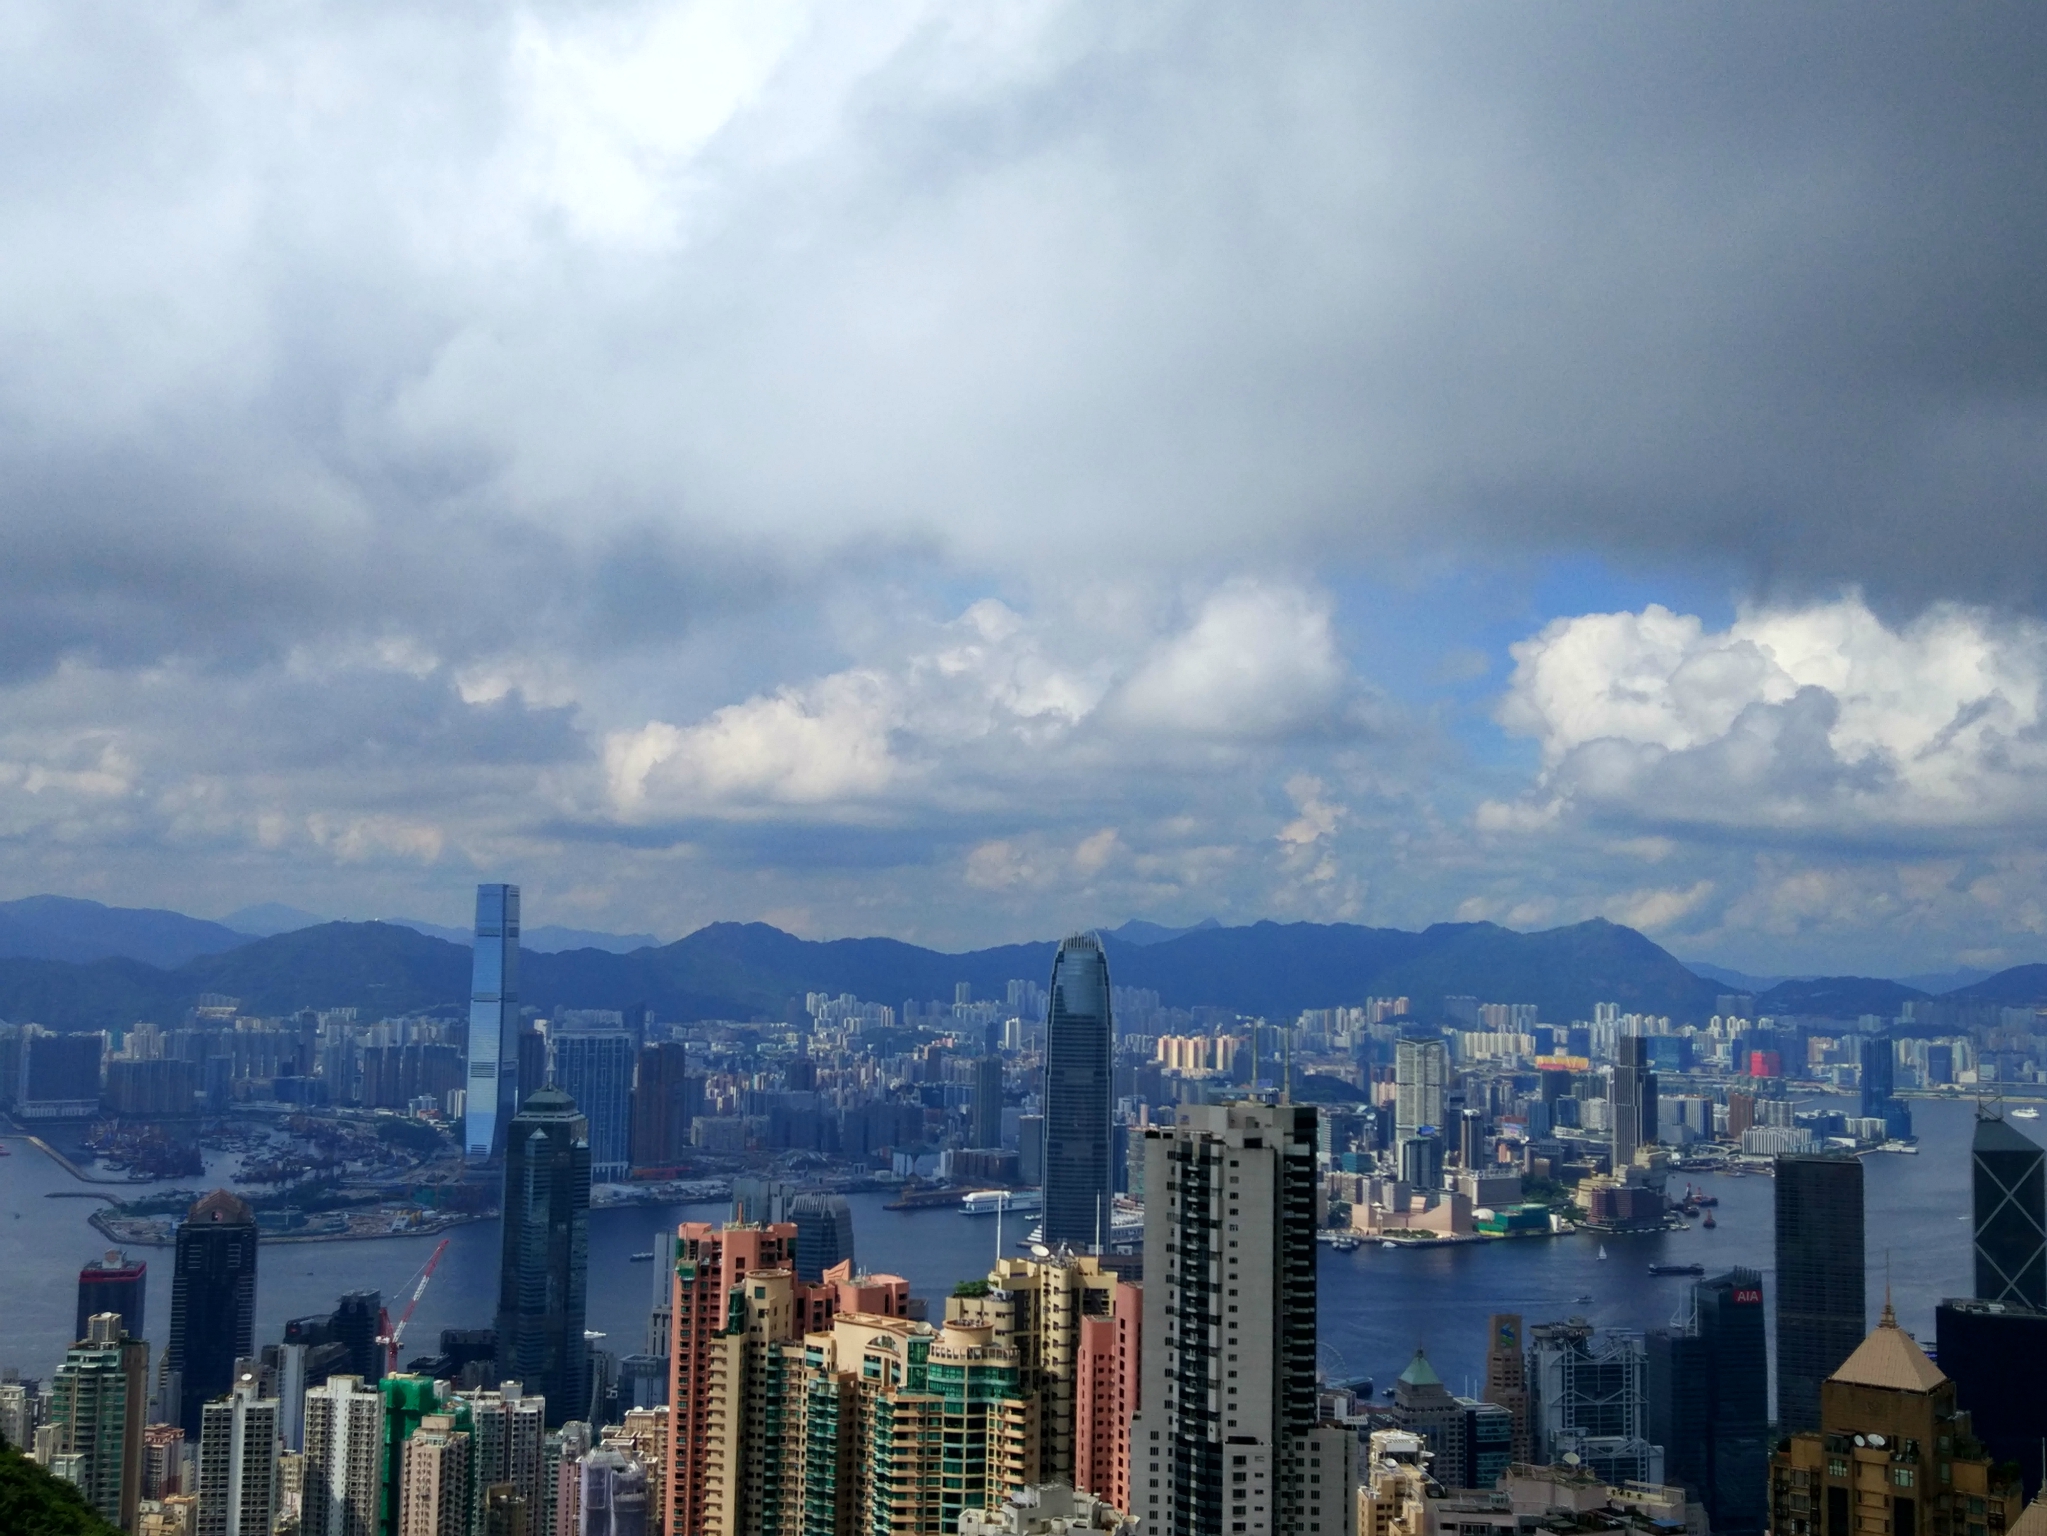 【携程攻略】香港太平山顶景点,在太平山顶可以俯览香港的全景，而且还可以看到半山豪宅，不过那豪宅…